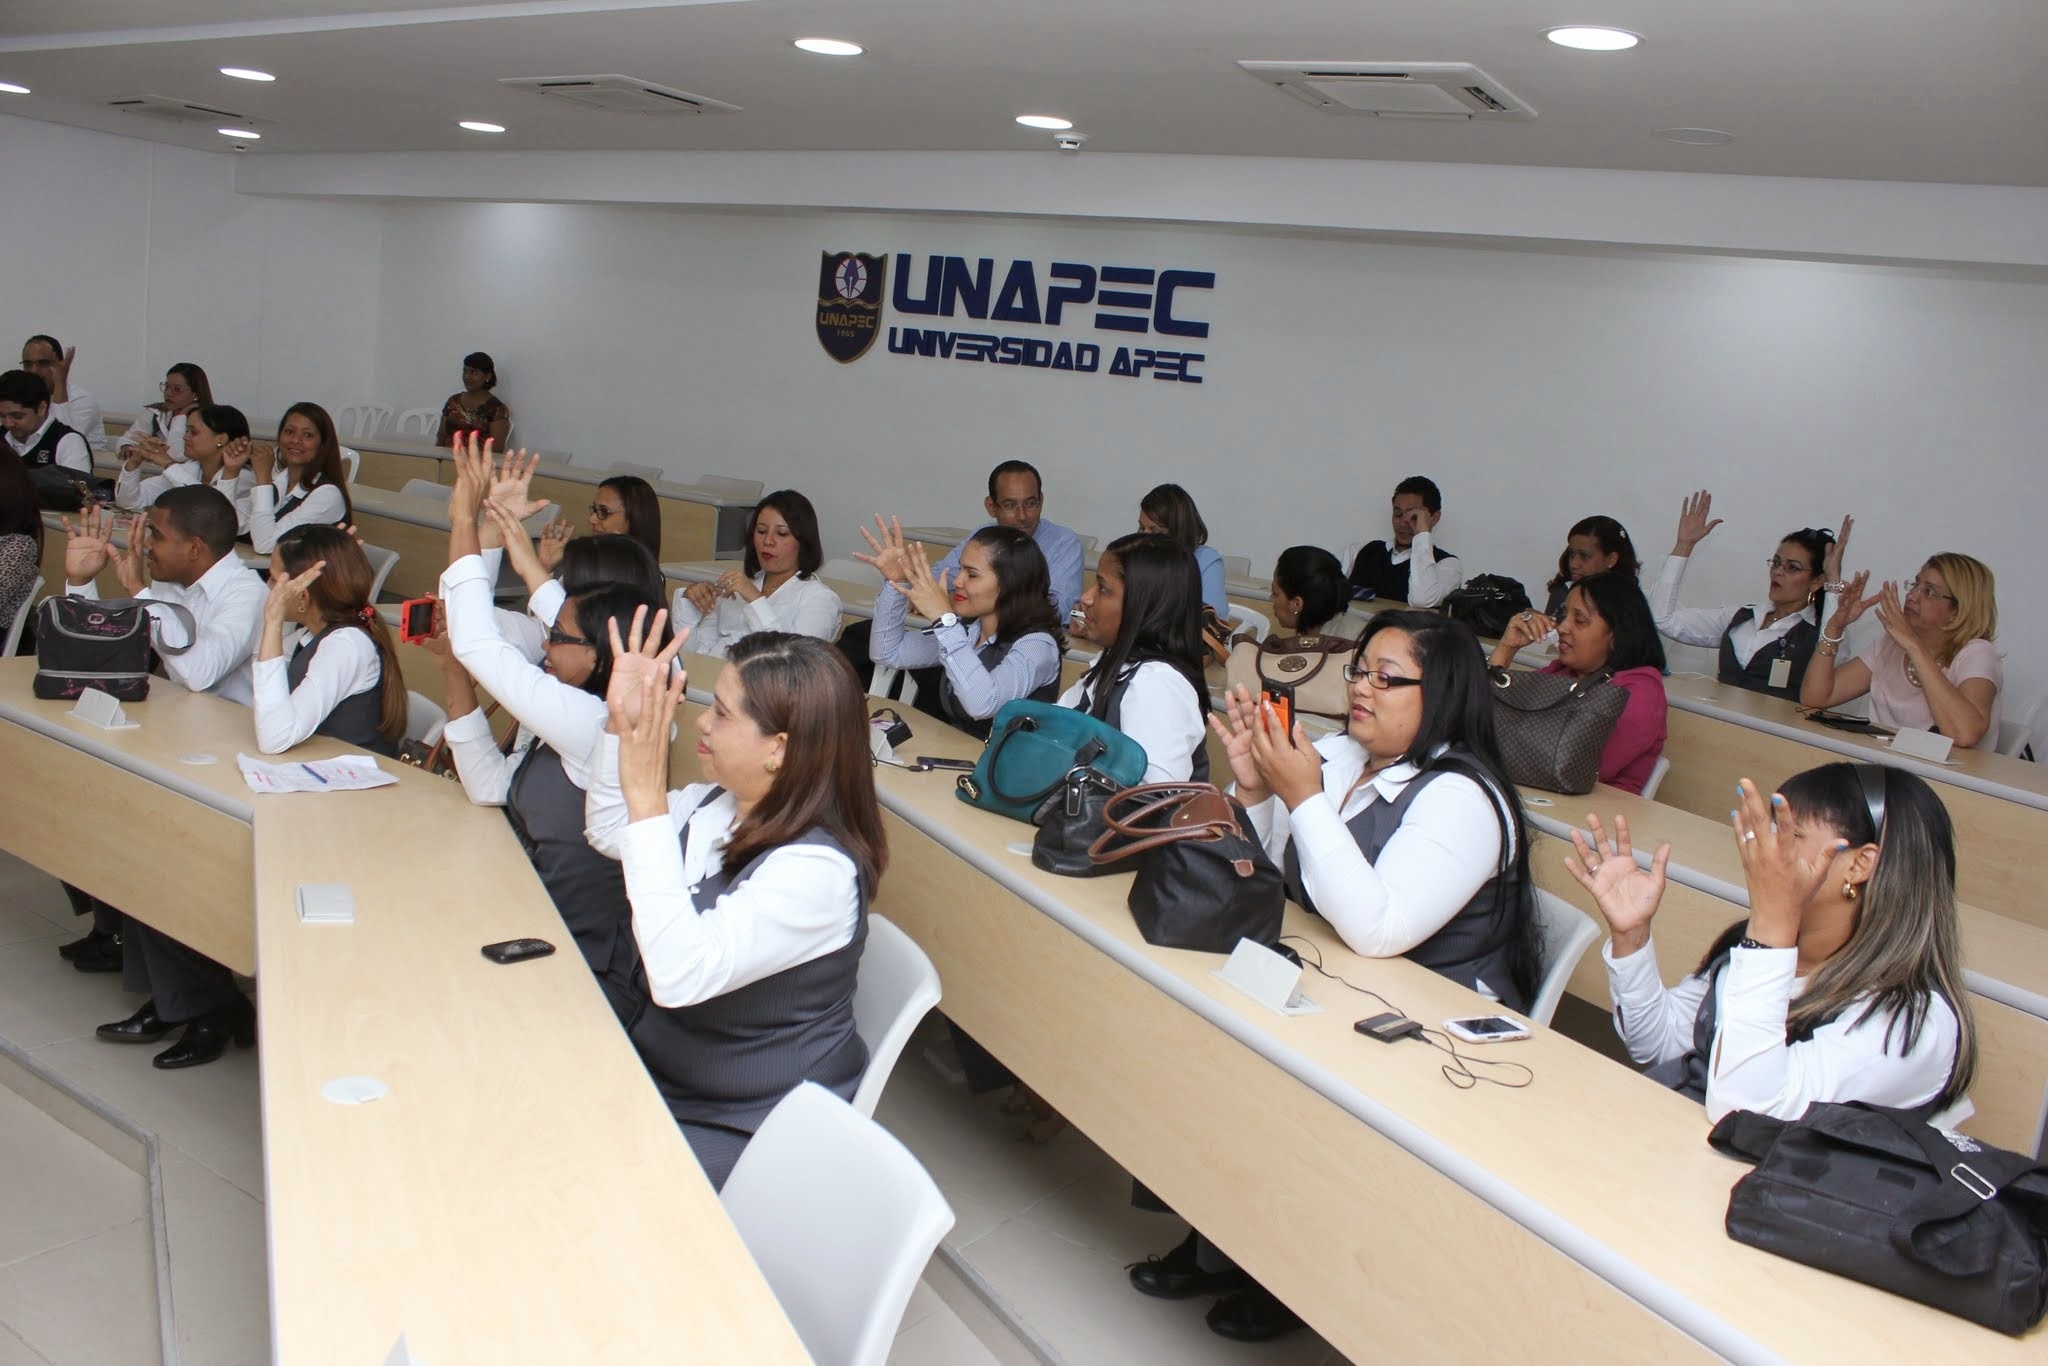 La actividad fue realizada en el Salón de Conferencias de la Universidad APEC.